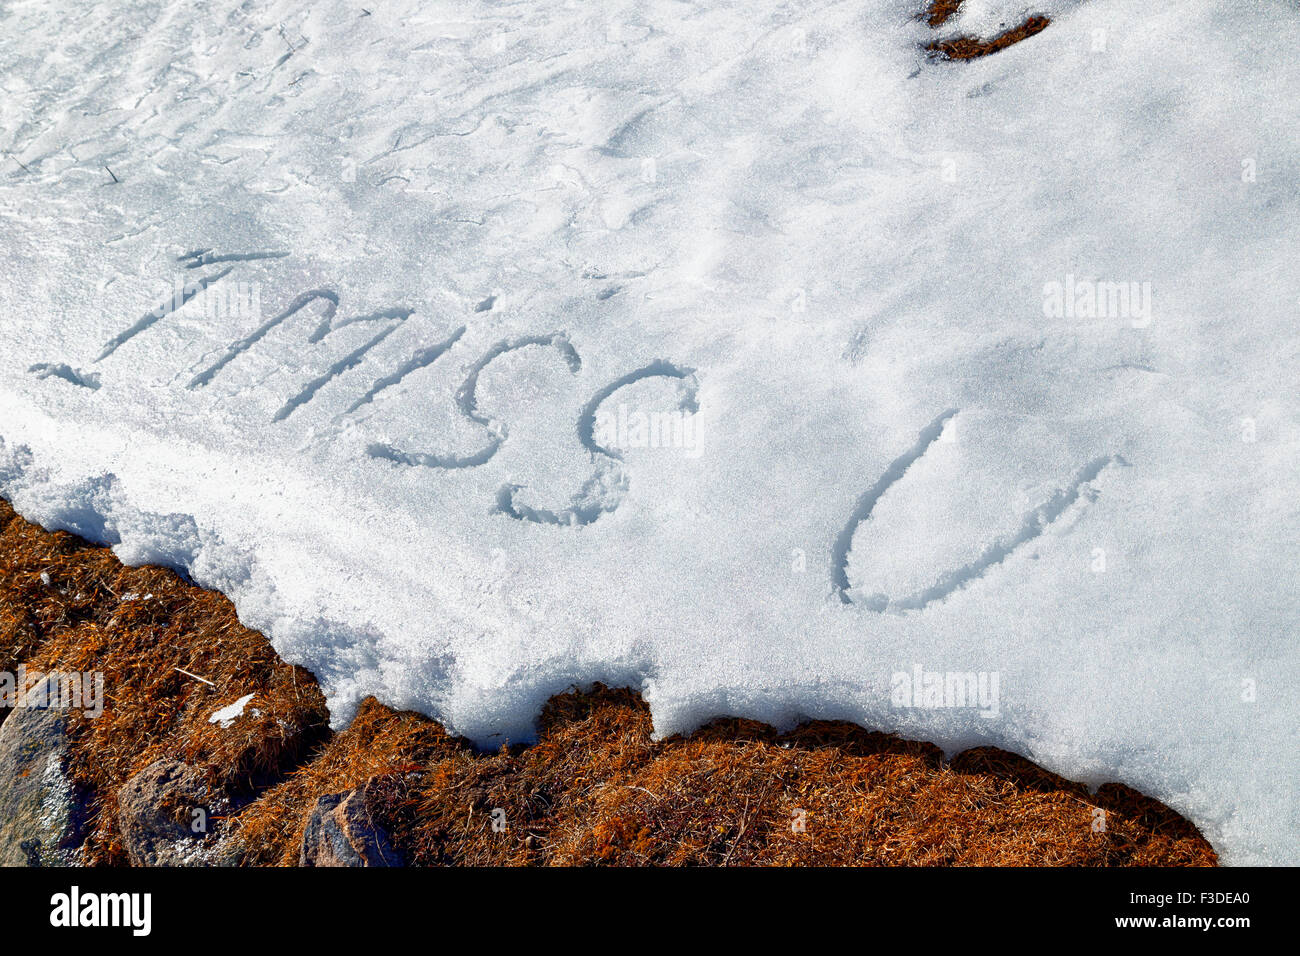 I miss U, frase escrita en letras mayúsculas en el blanco de la nieve congelada mientras brown maleza y musgo en primer plano Foto de stock